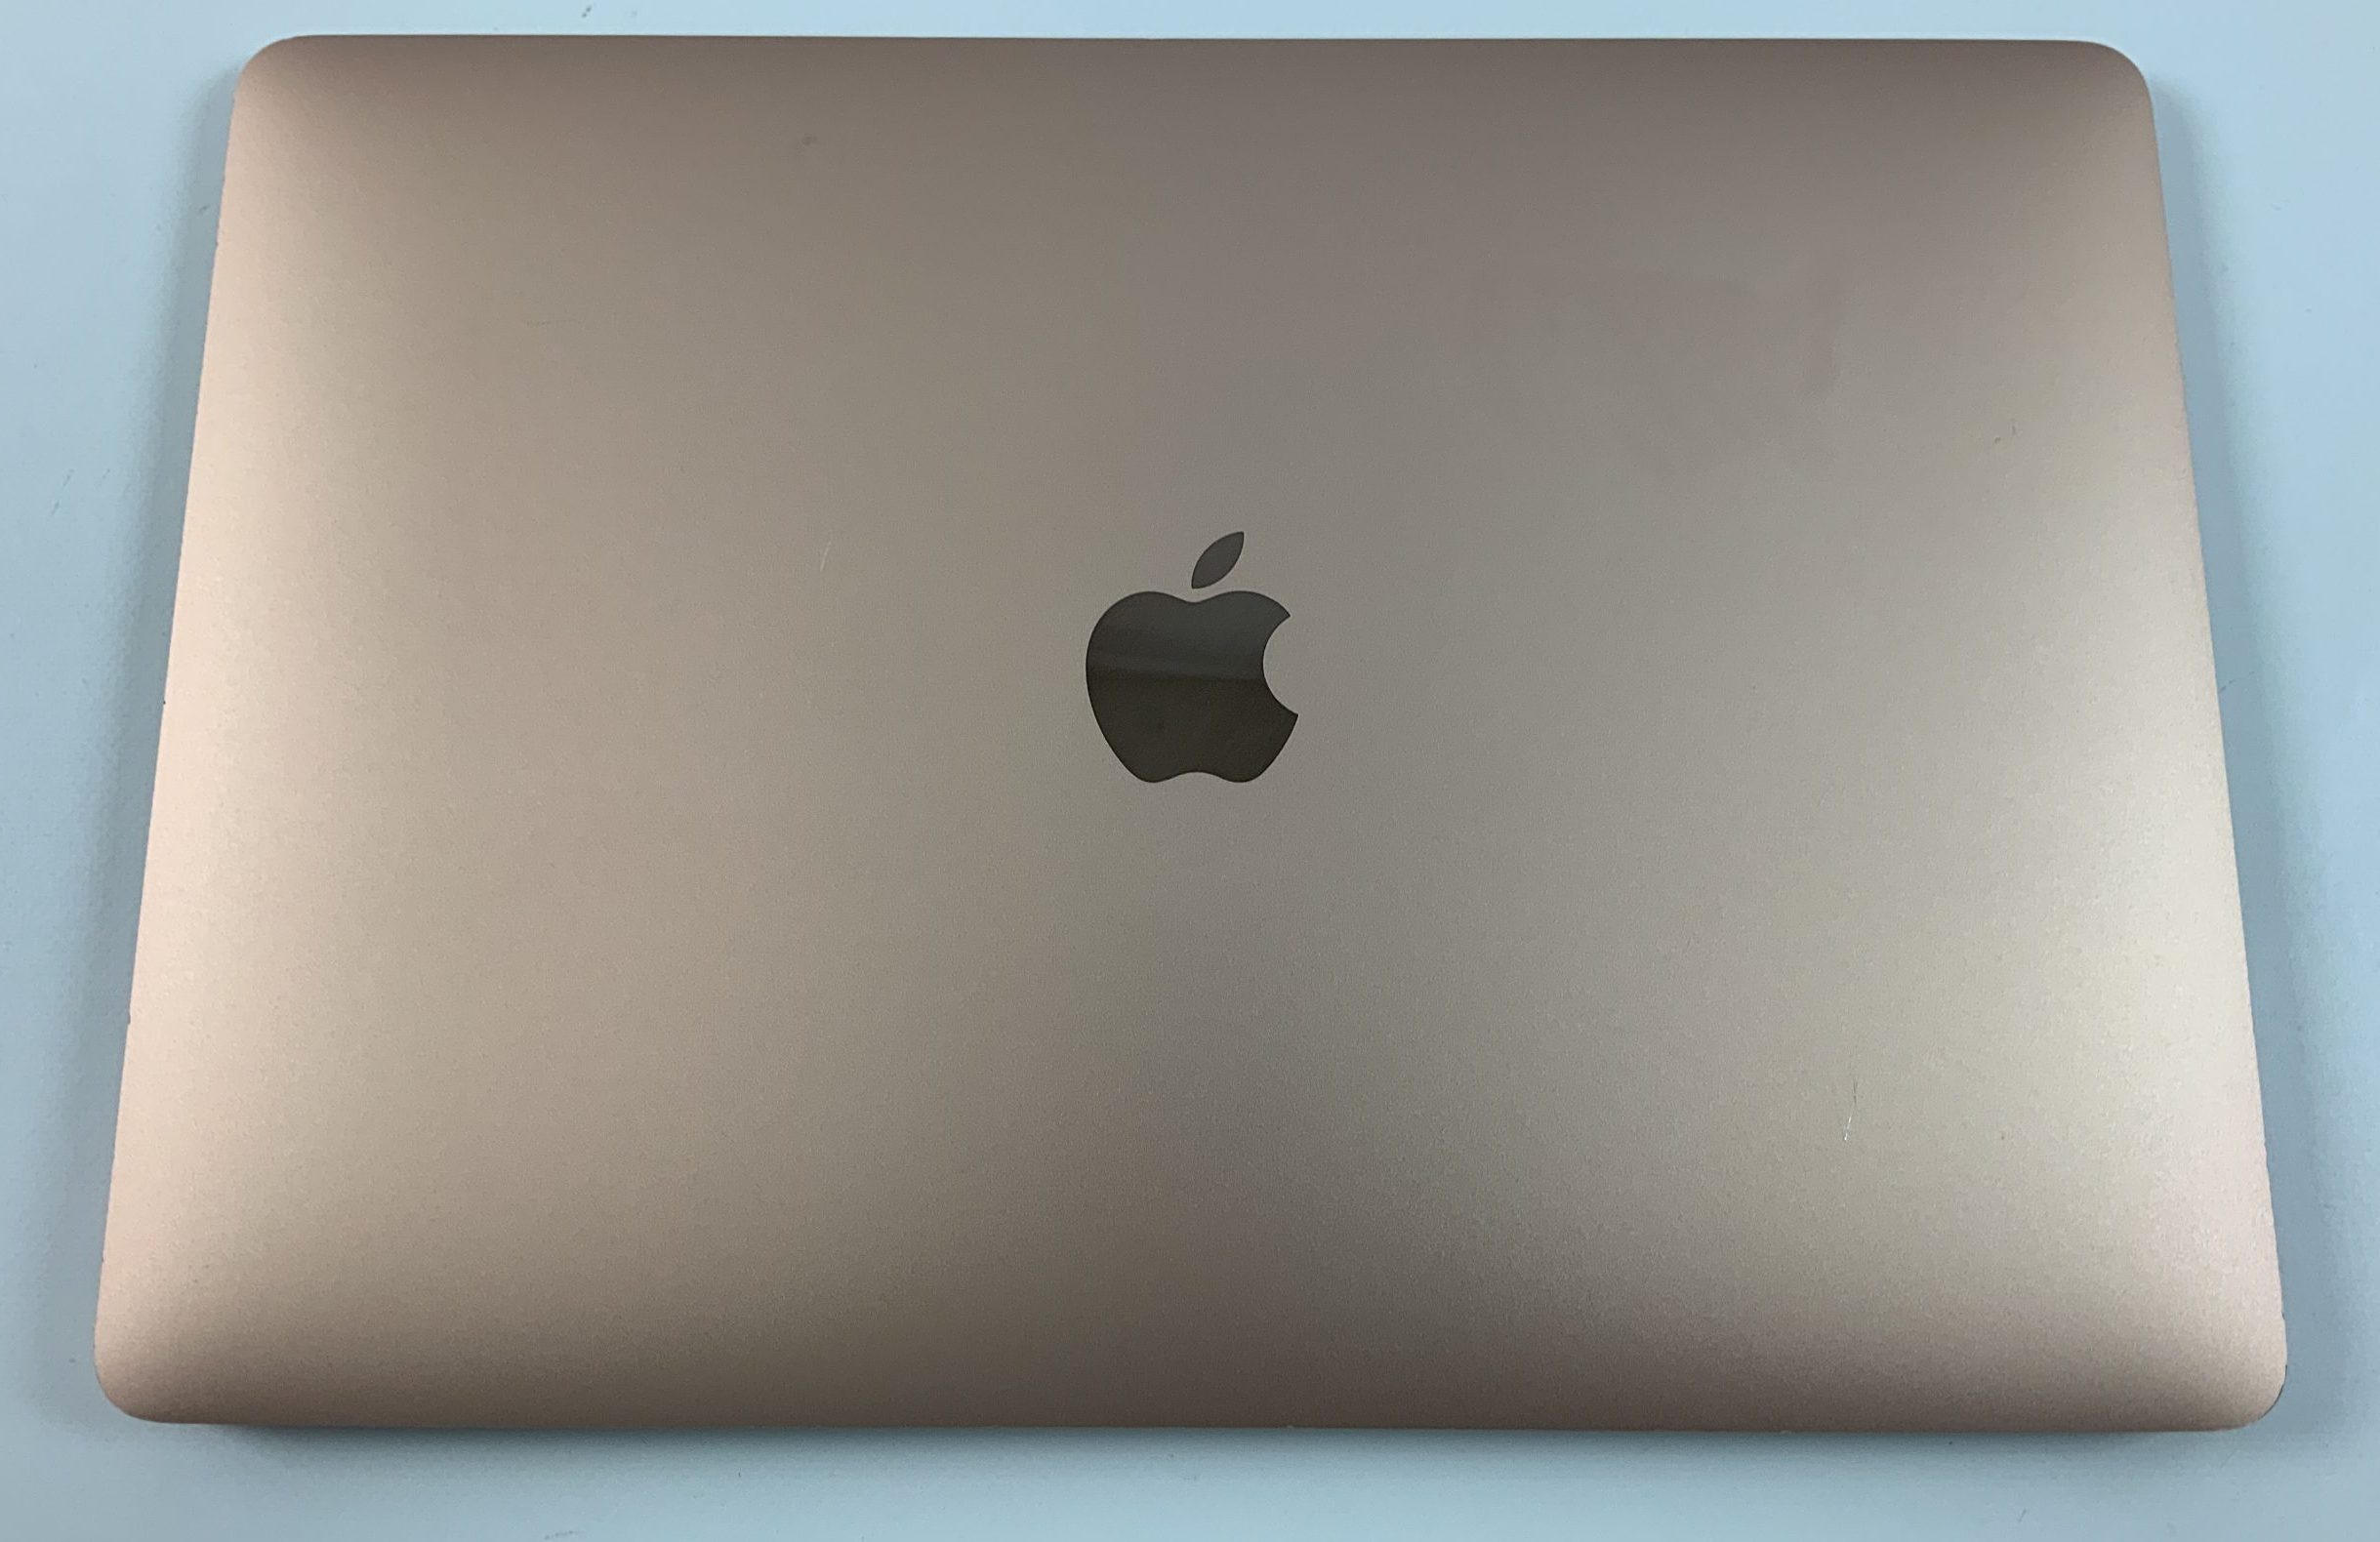 MacBook Air 13" Mid 2019 (Intel Core i5 1.6 GHz 16 GB RAM 256 GB SSD), Gold, Intel Core i5 1.6 GHz, 16 GB RAM, 256 GB SSD, Bild 2